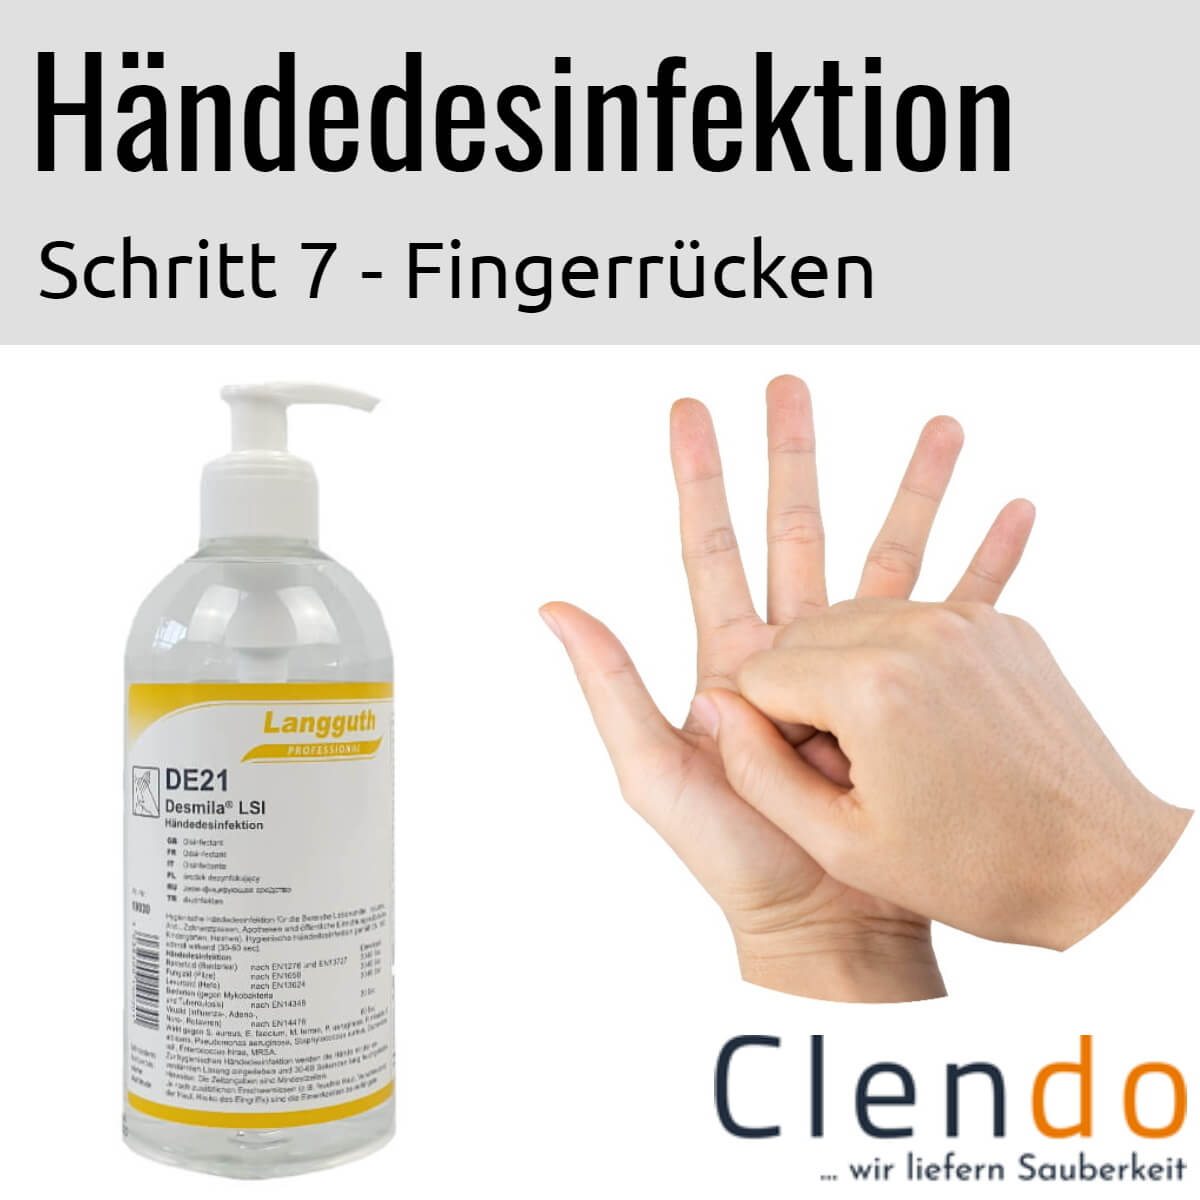 Languth Desmila LSI Händedesinfektion DE21 Fingerrücken desinfizieren